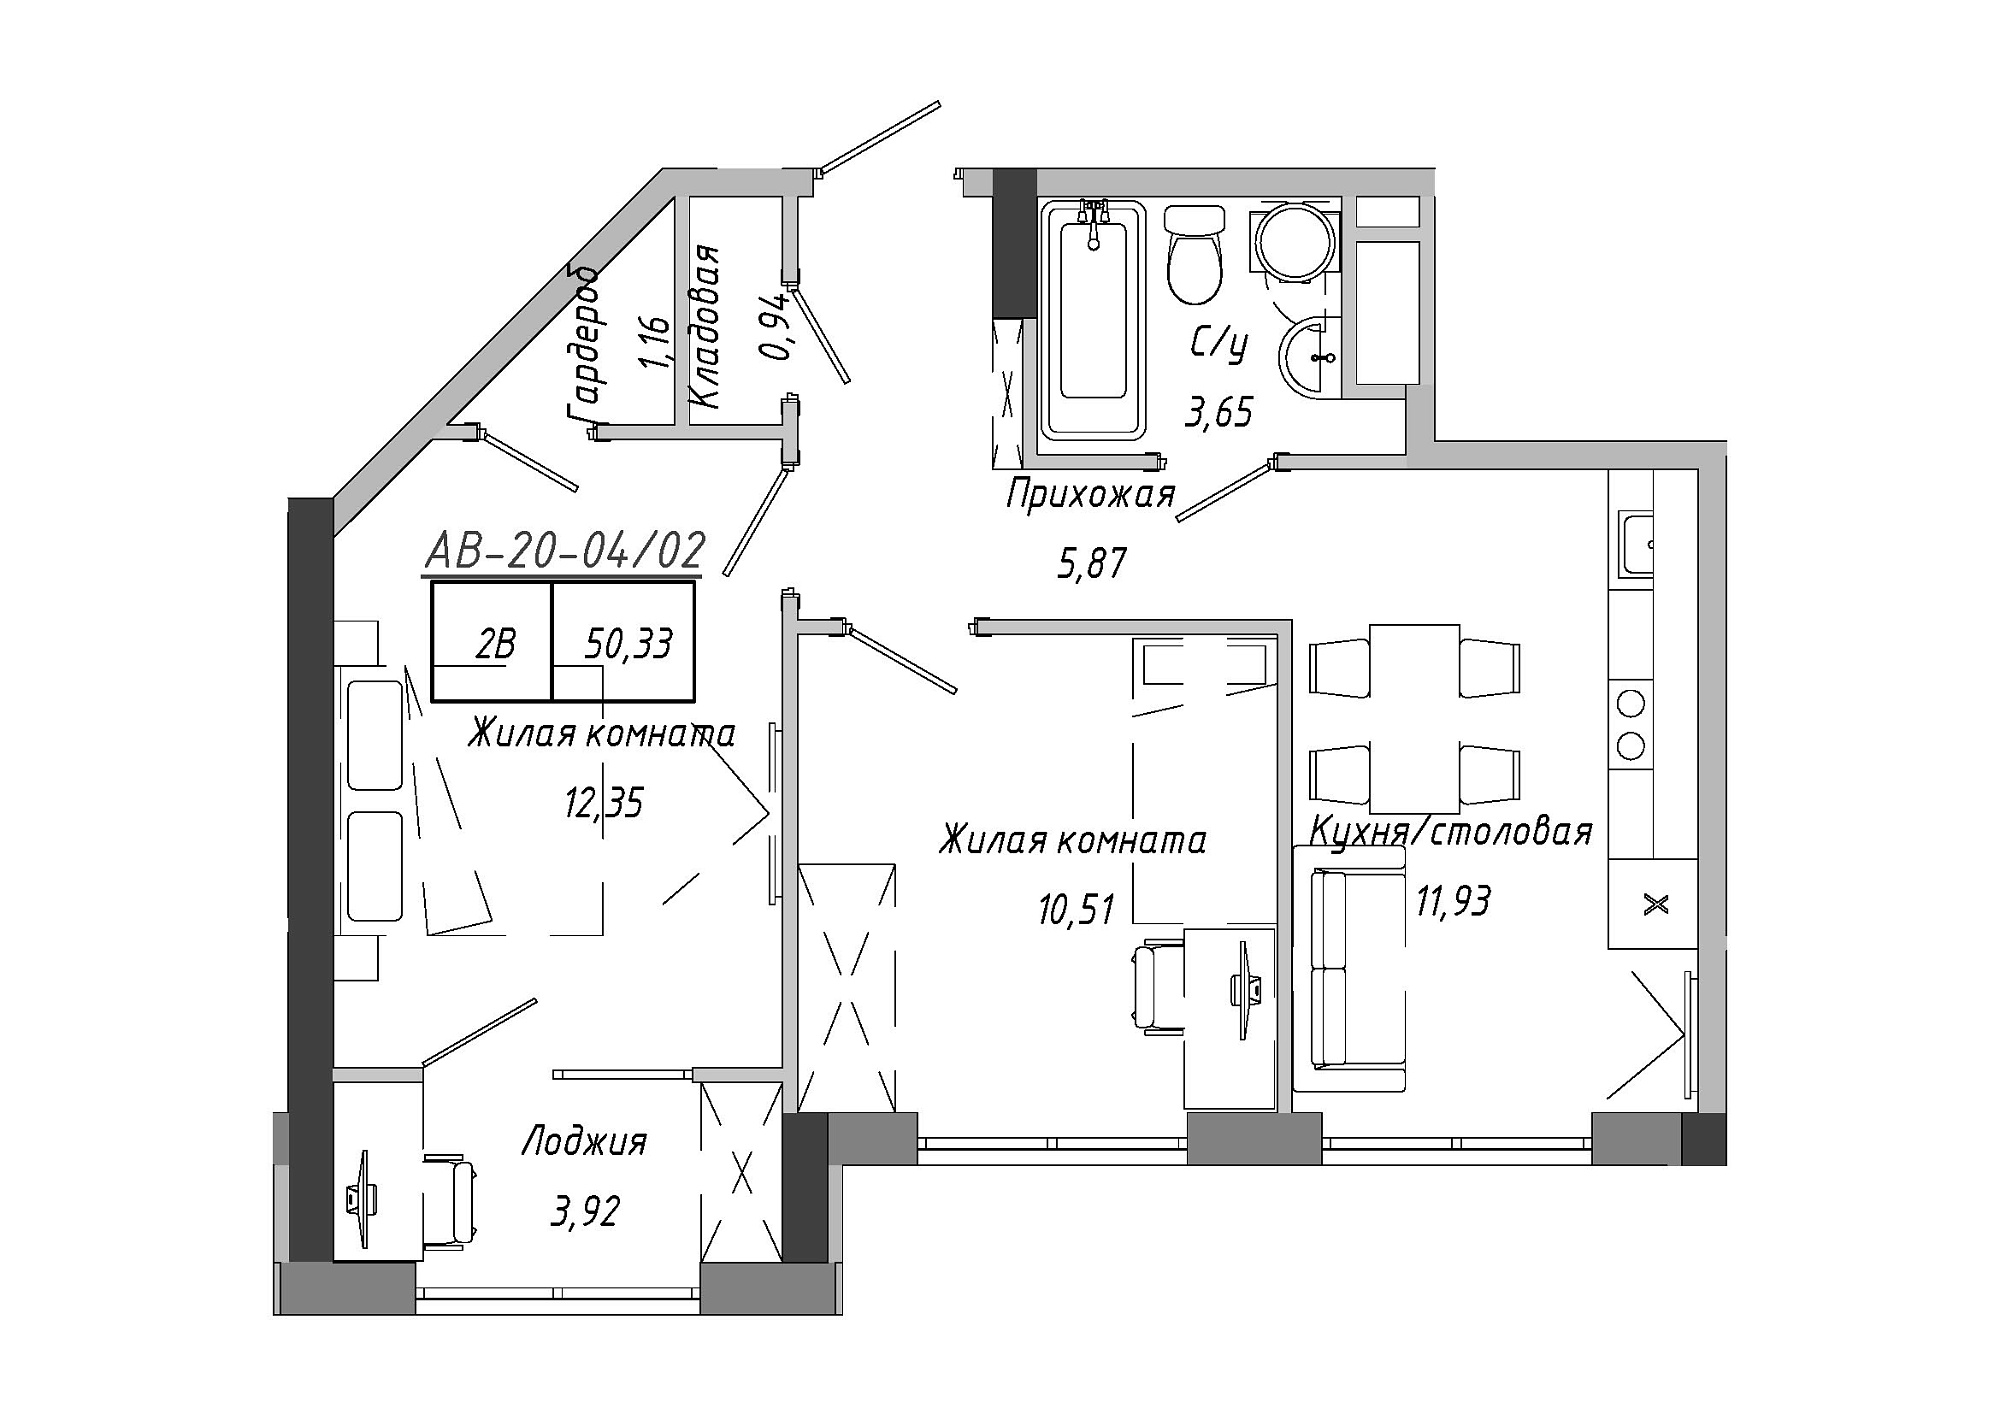 Планування 2-к квартира площею 50.33м2, AB-20-04/00002.